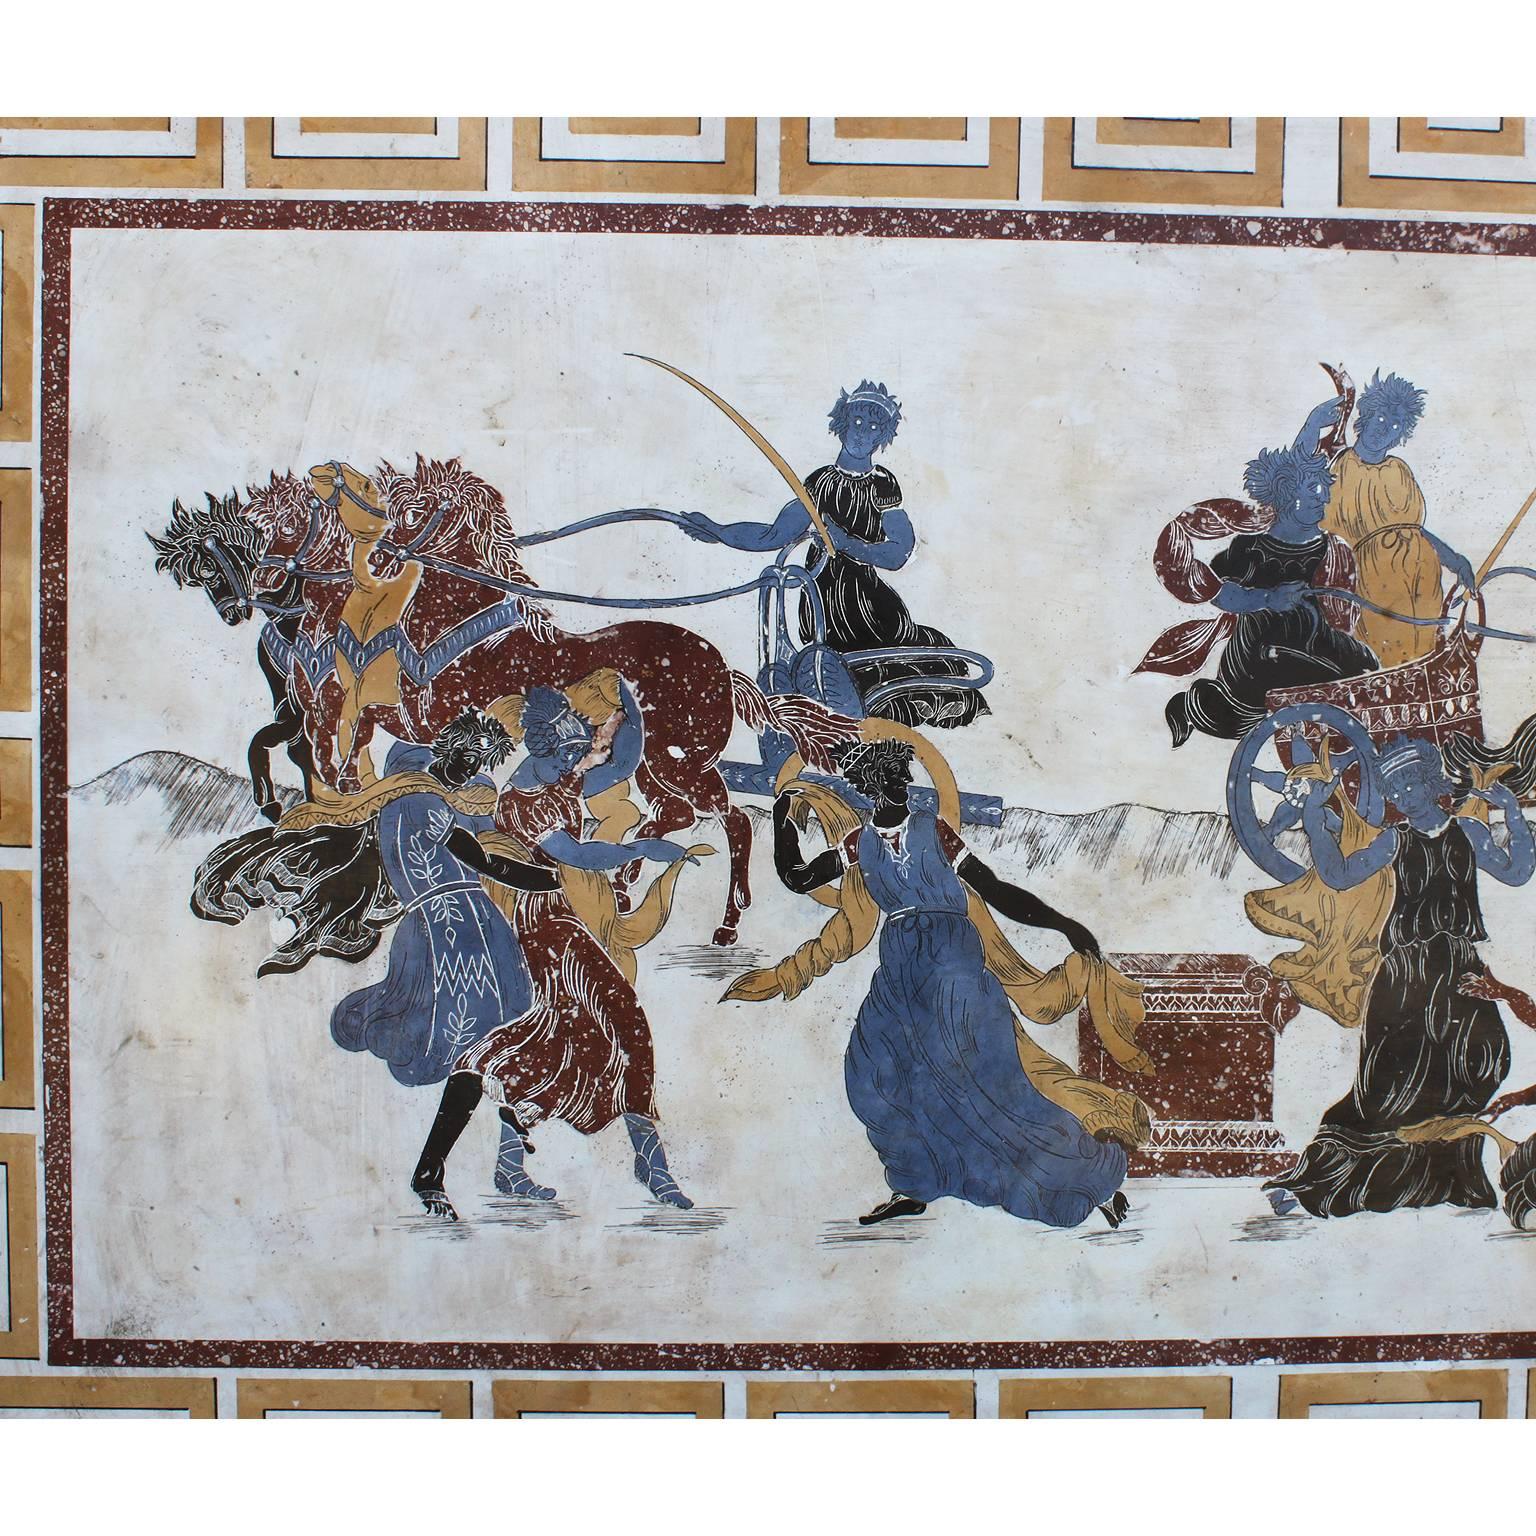 Grande plaque murale italienne de style néoclassique et gréco-romain Scagliola du XIXe et XXe siècle représentant des chars, des chevaux, des jeunes filles allégoriques et des dieux, incrustée et peinte en porphyre impérial, sienne et autres pierres